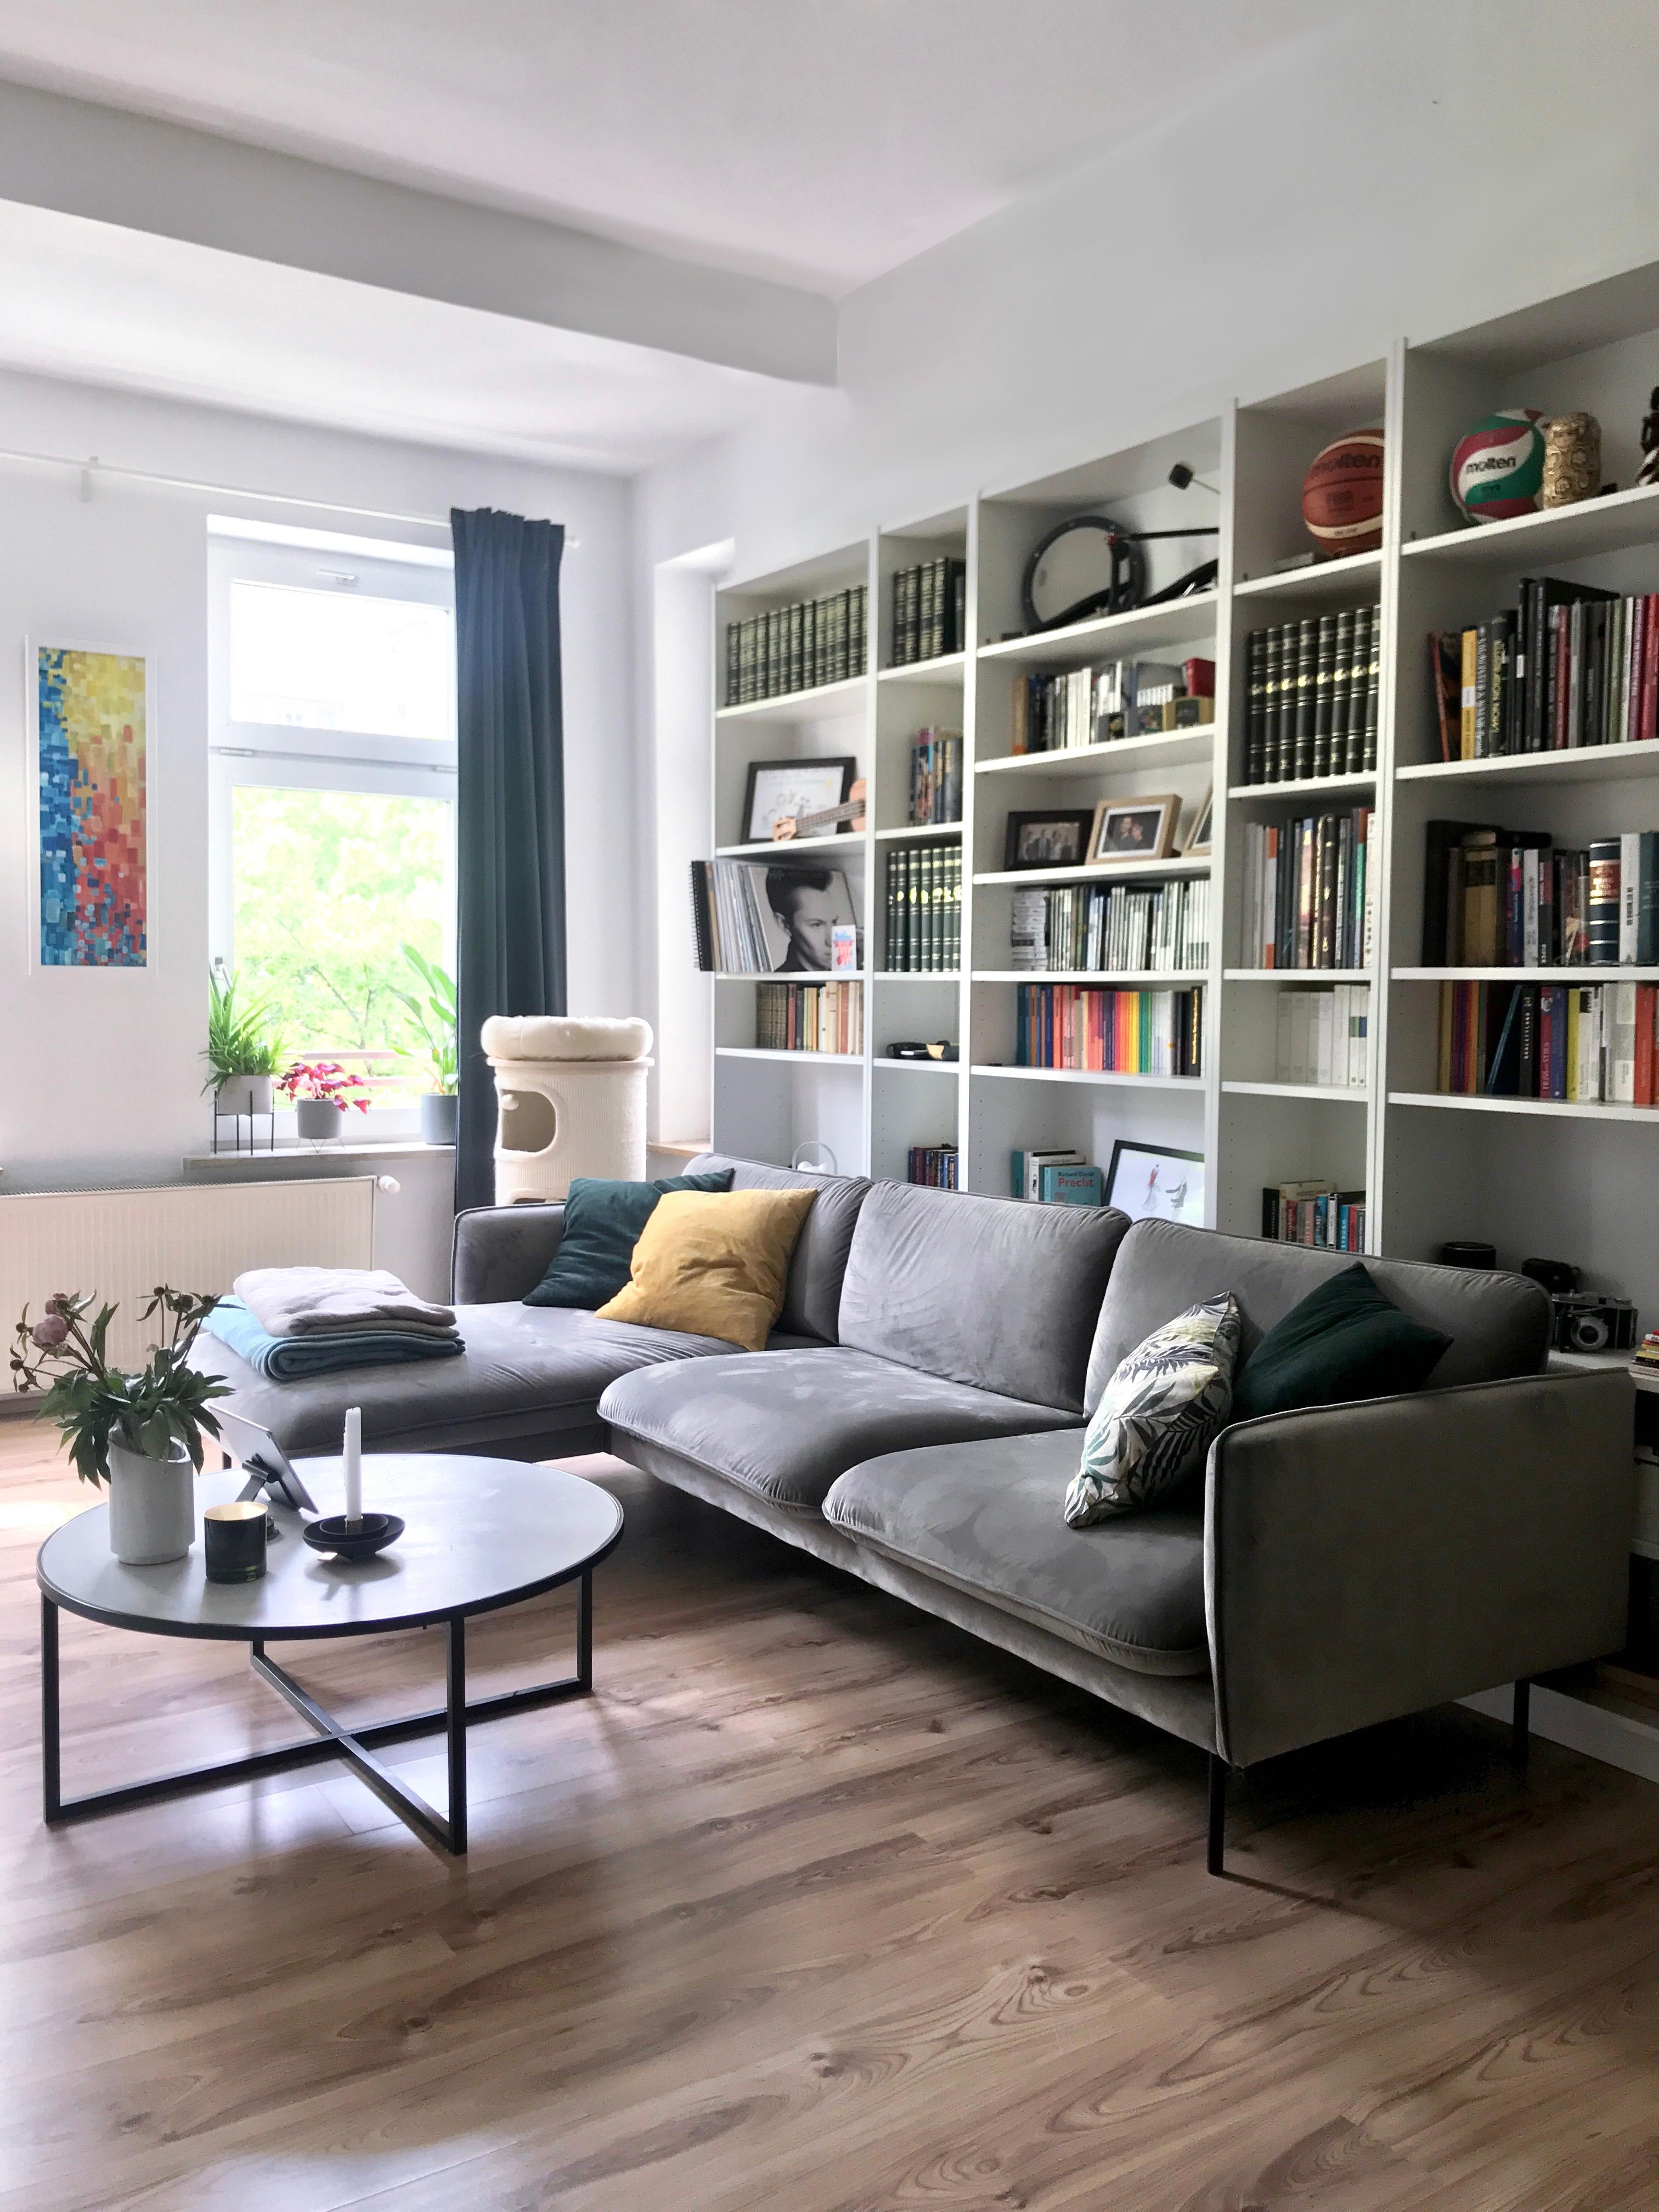 Bücher- & Couchliebe ♥️ #wohnzimmer #couchliebt #couch #bücherregal #couchlieblingsstücke